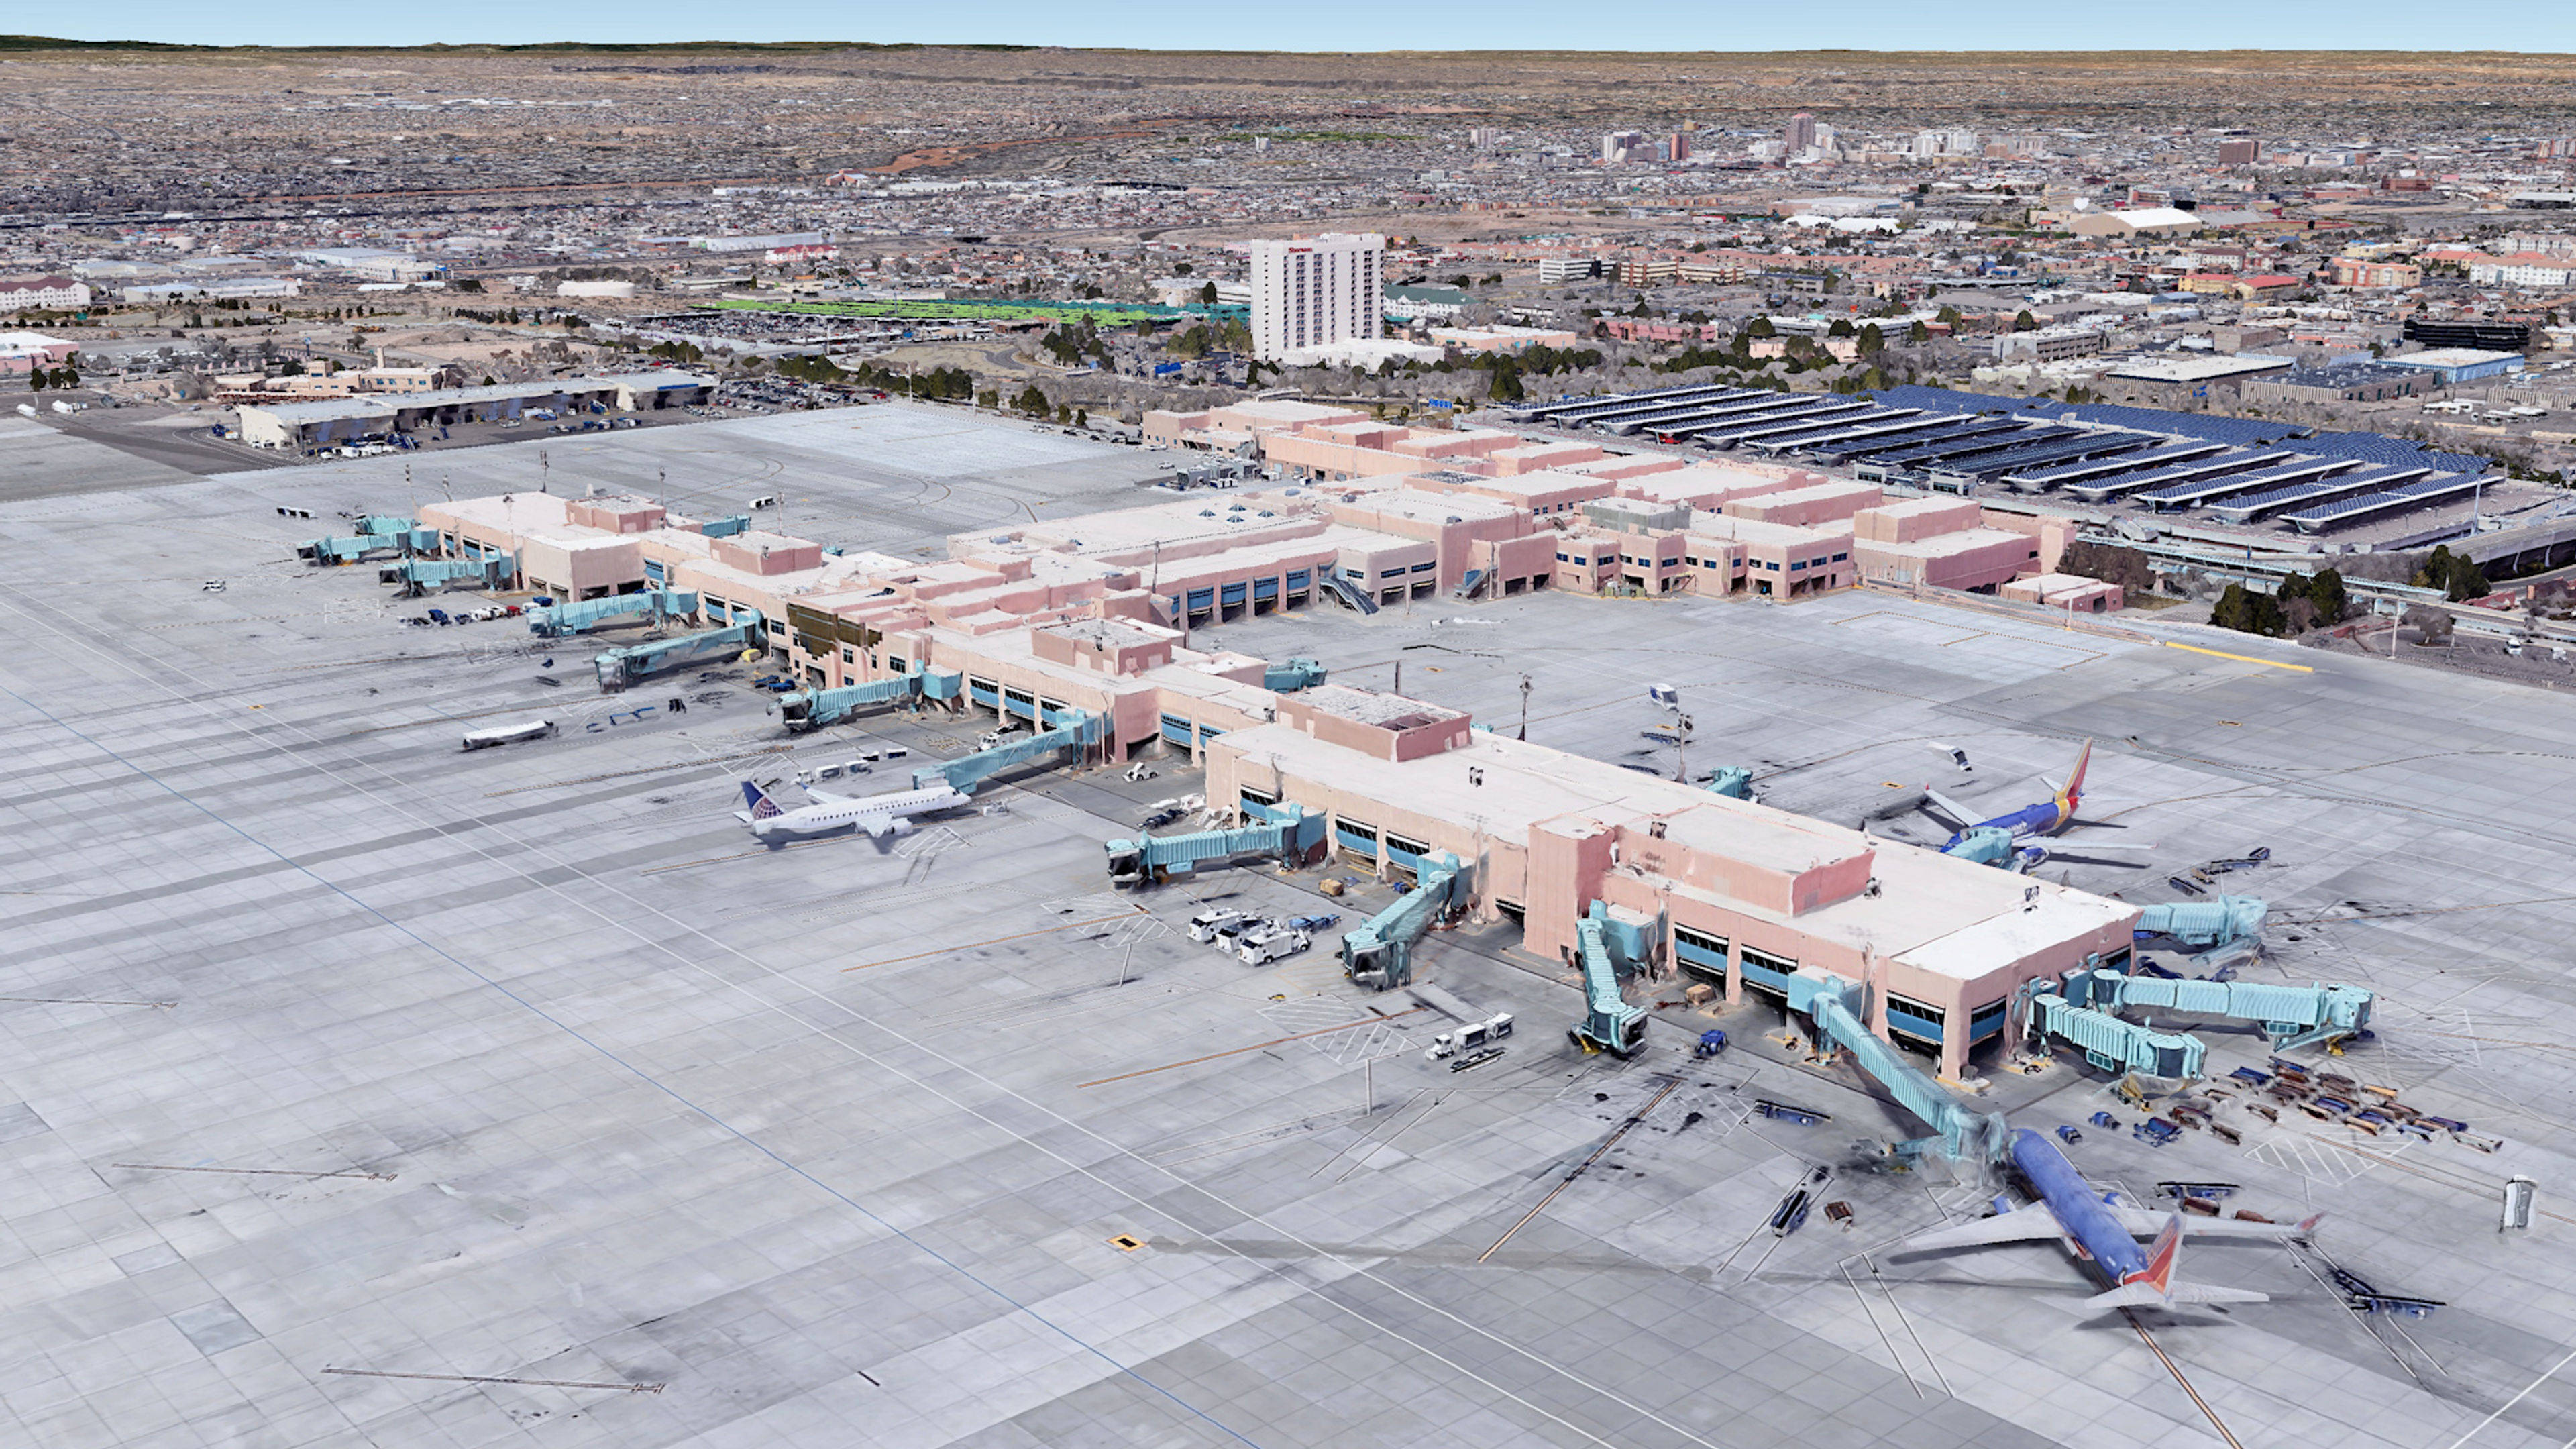 Aerial View of Albuquerque Sunport Airport